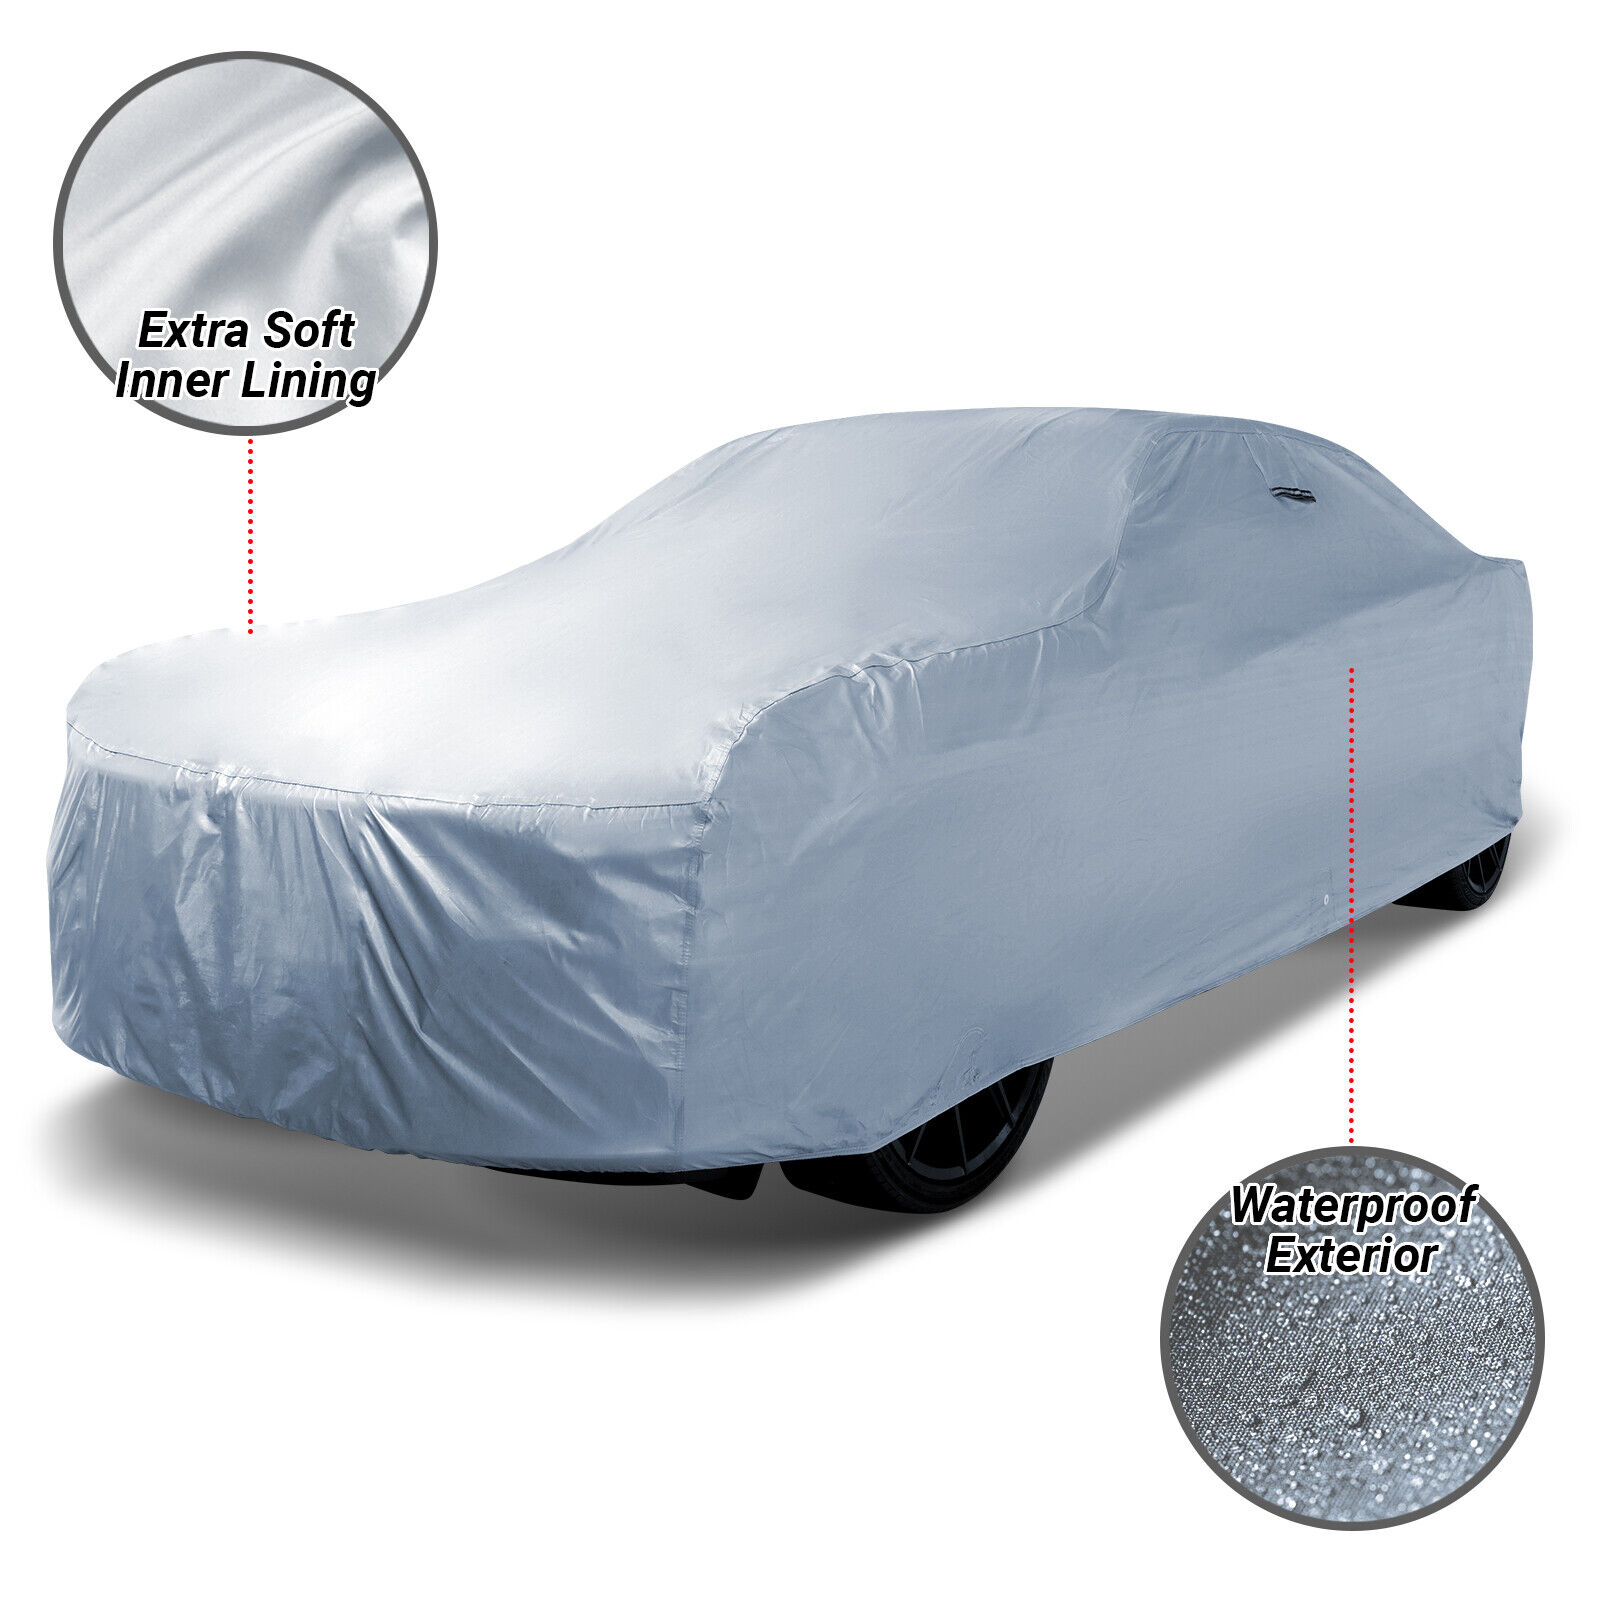 100% Waterproof / All Weather For [ROLLS ROYCE] Full Warranty Custom Car Cover